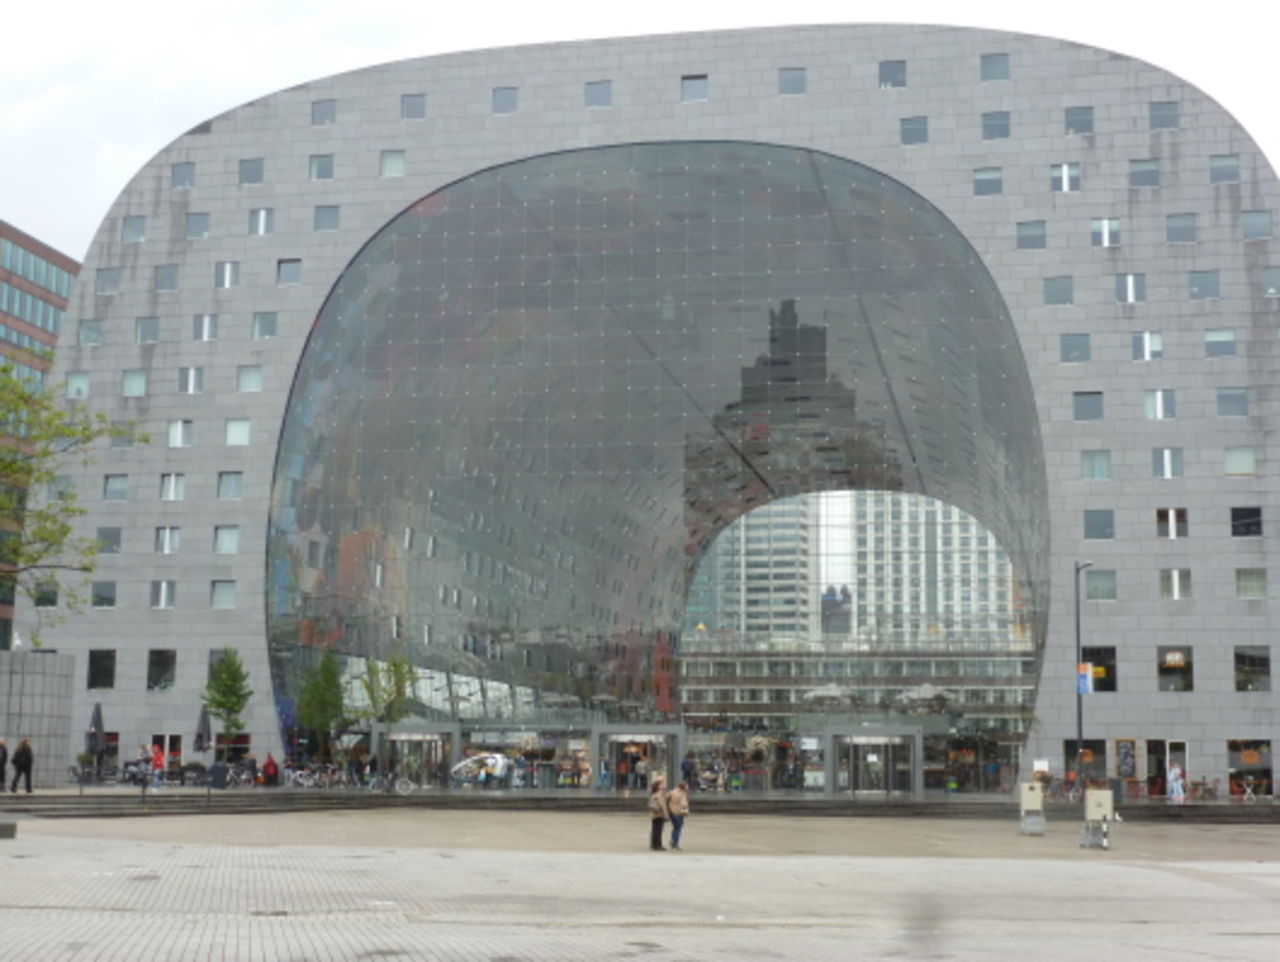 Die "Markthal" von MVRDV (2014), im Zentrum der Stadt gelegen, kombiniert Wohnungsbau mit einer überdachten Markthalle.